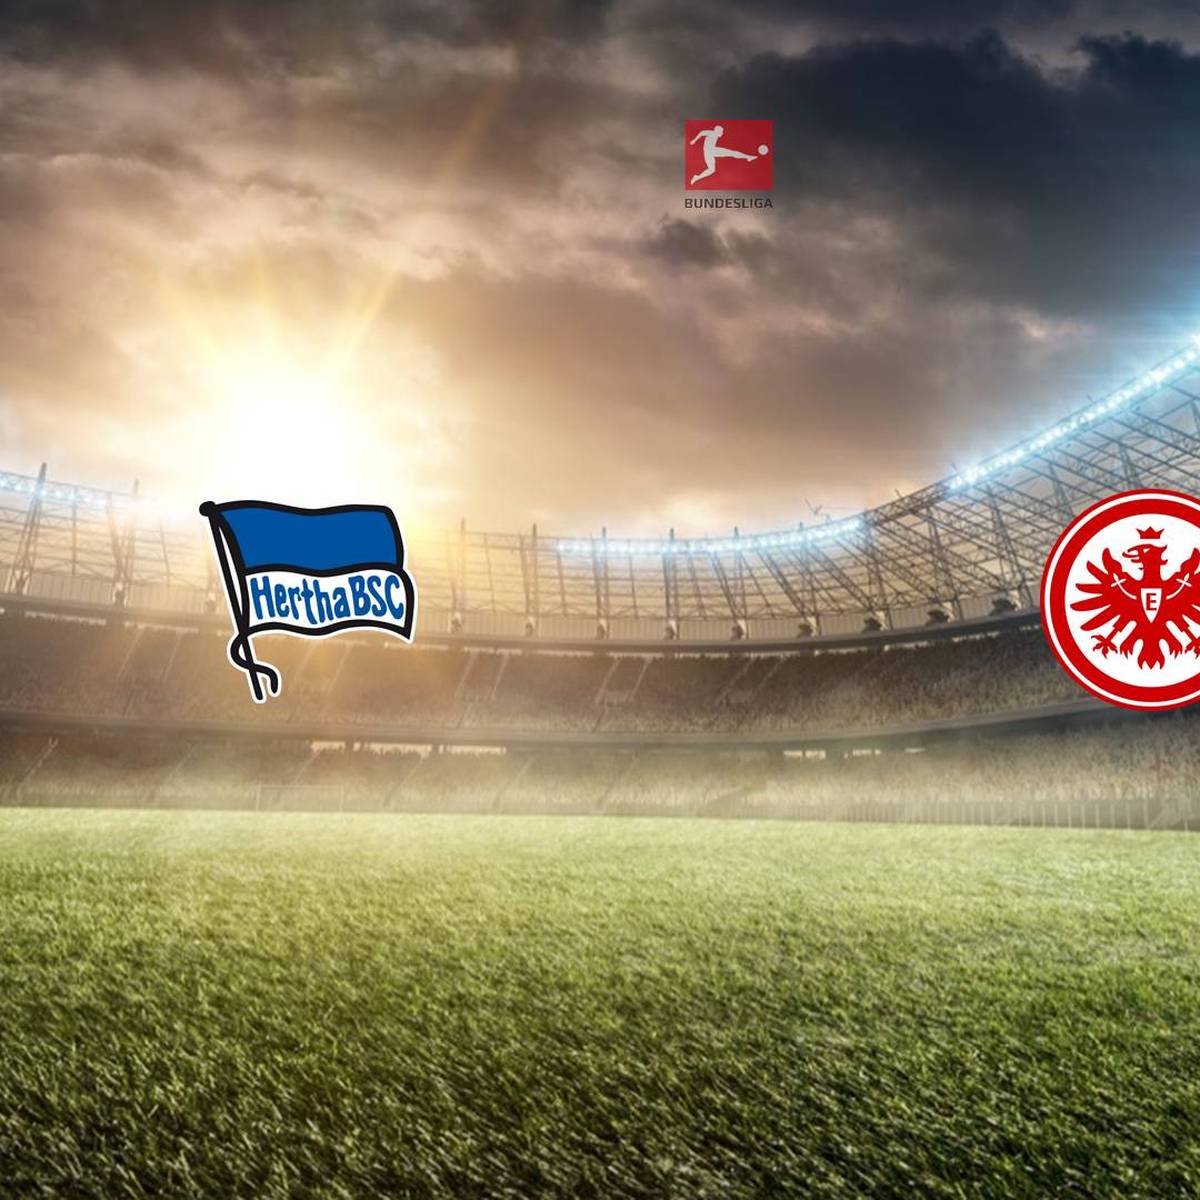 Bundesliga: Hertha BSC – Eintracht Frankfurt (Samstag, 15:30 Uhr)